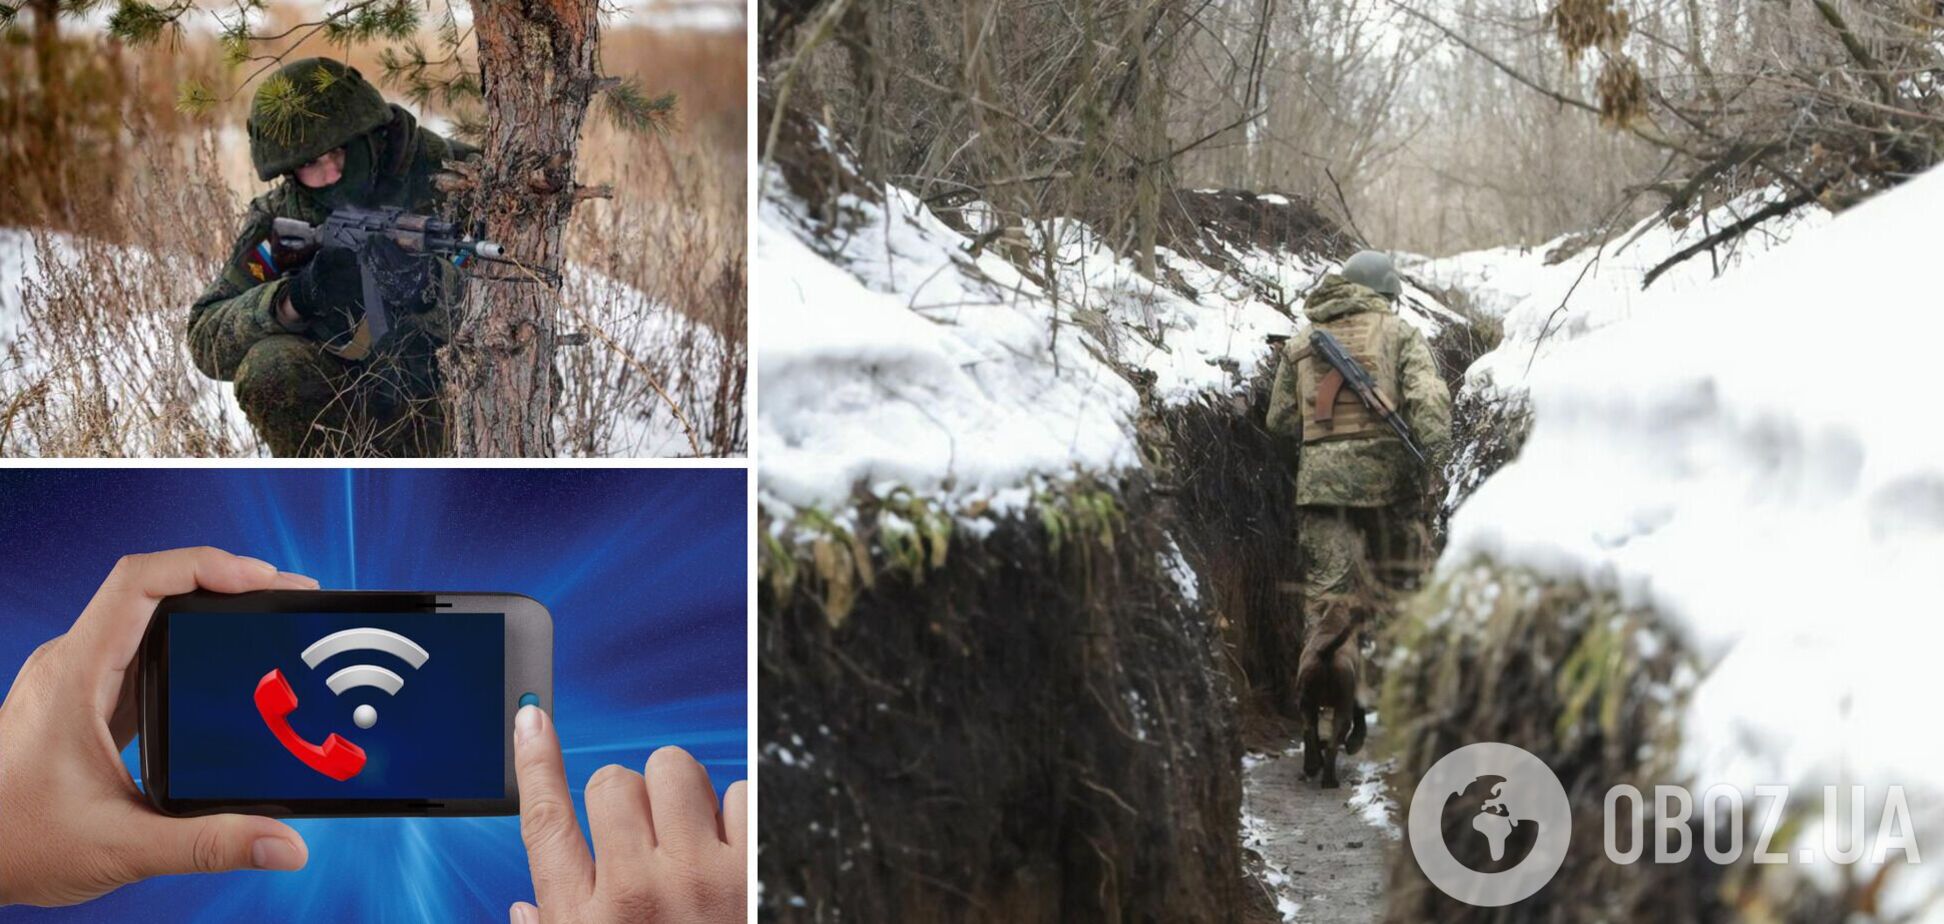 На Донбасі виникли проблеми з мобільним зв'язком, а окупанти погрожували спостерігачам ОБСЄ. Головне про ситуацію